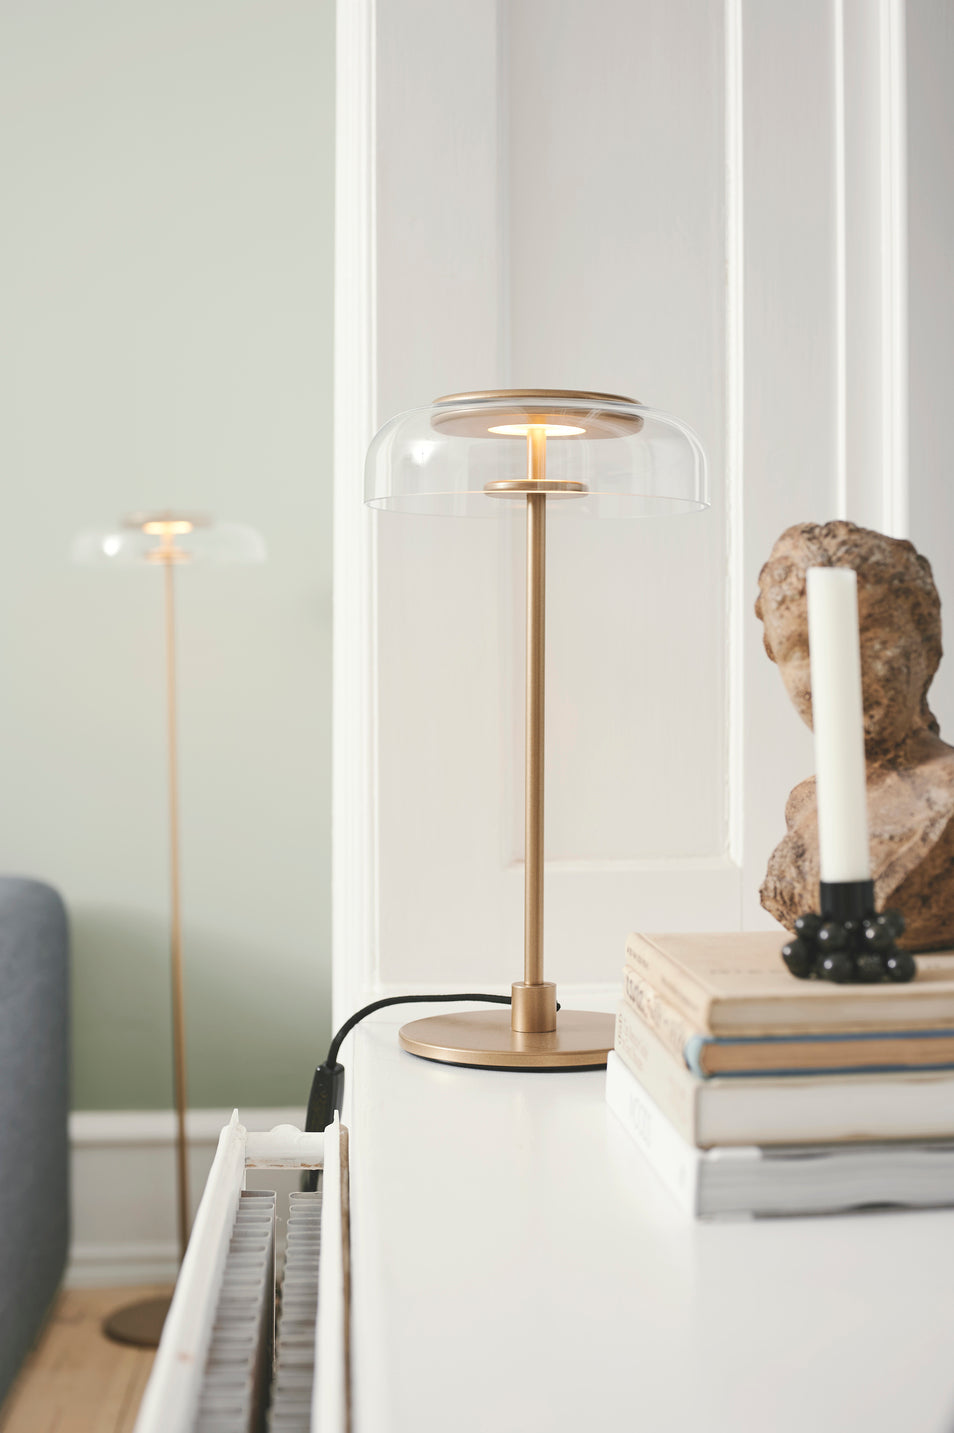 Bordlampe med gyldent stel og fatning samt glasskærm, i dagligstuemiljø